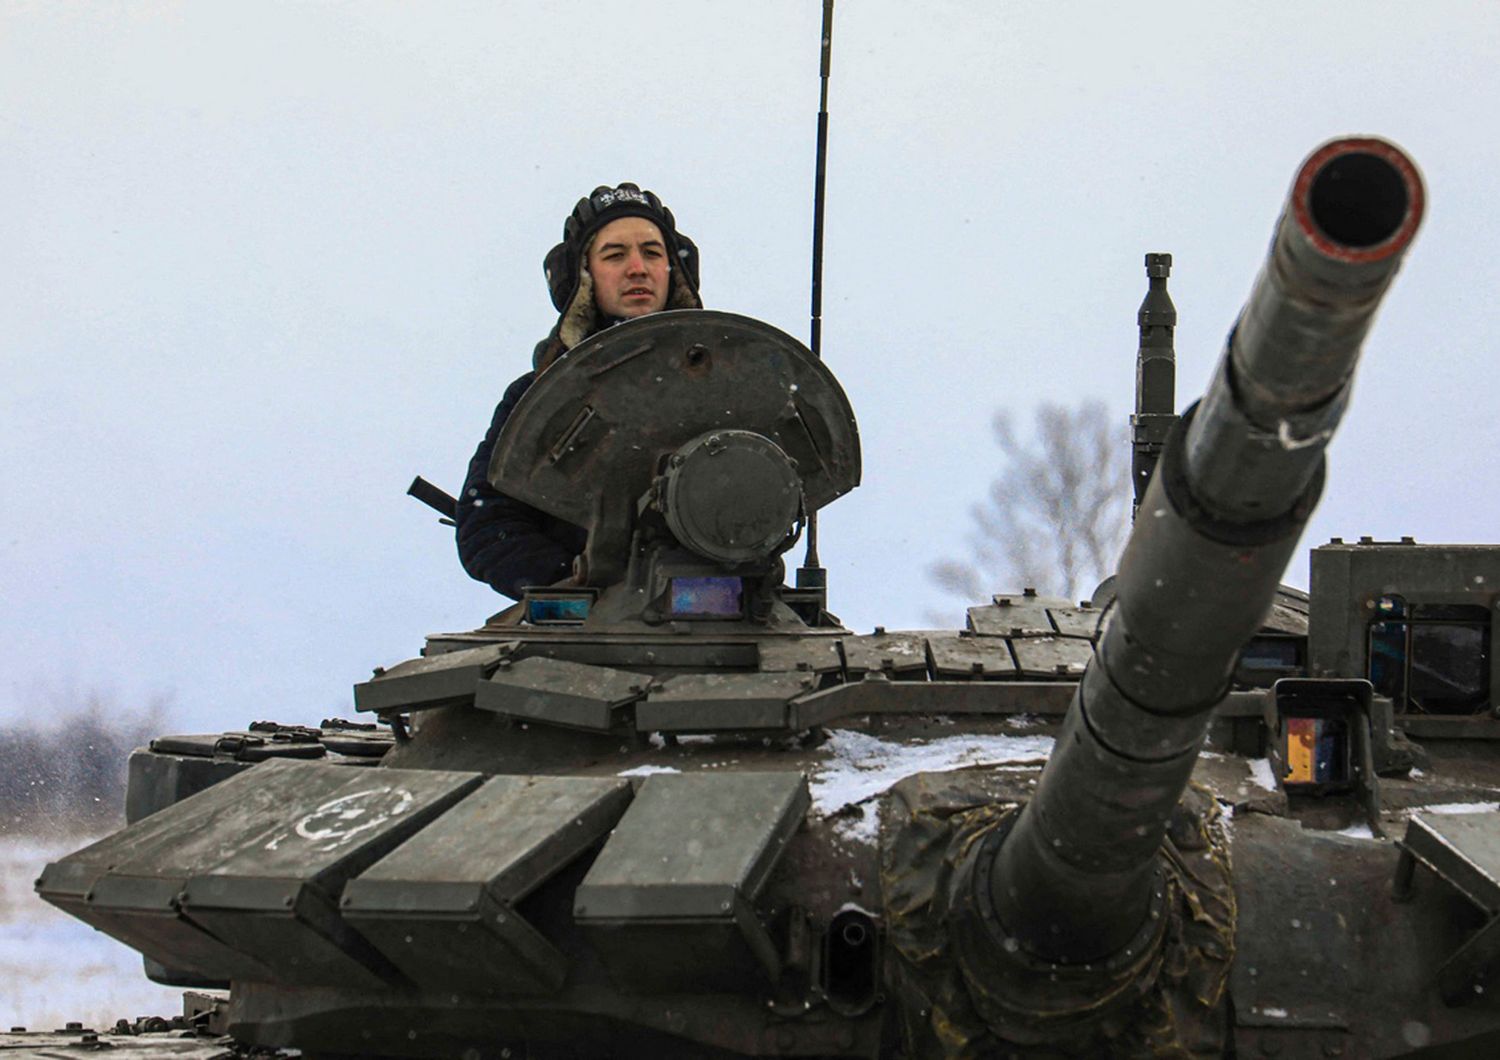 Un carro armato russo impegnato in un'esercitazione